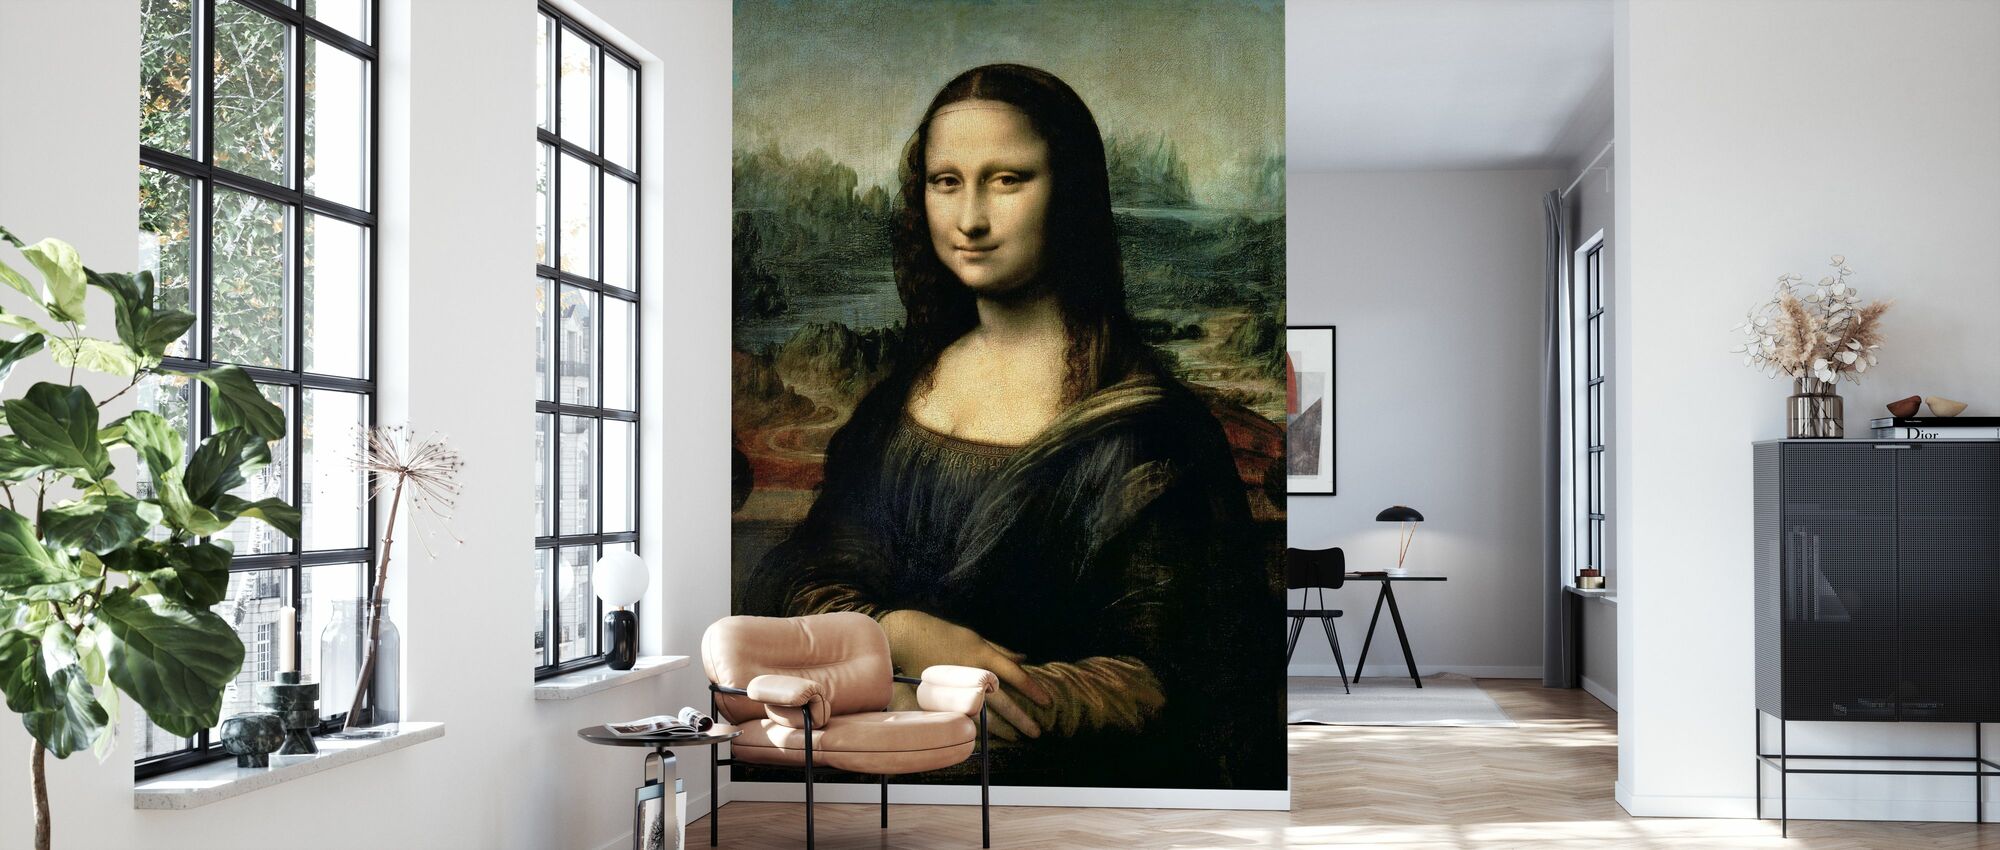 Mona Lisa, Leonardo da Vinci – remarkable wall mural – Photowall